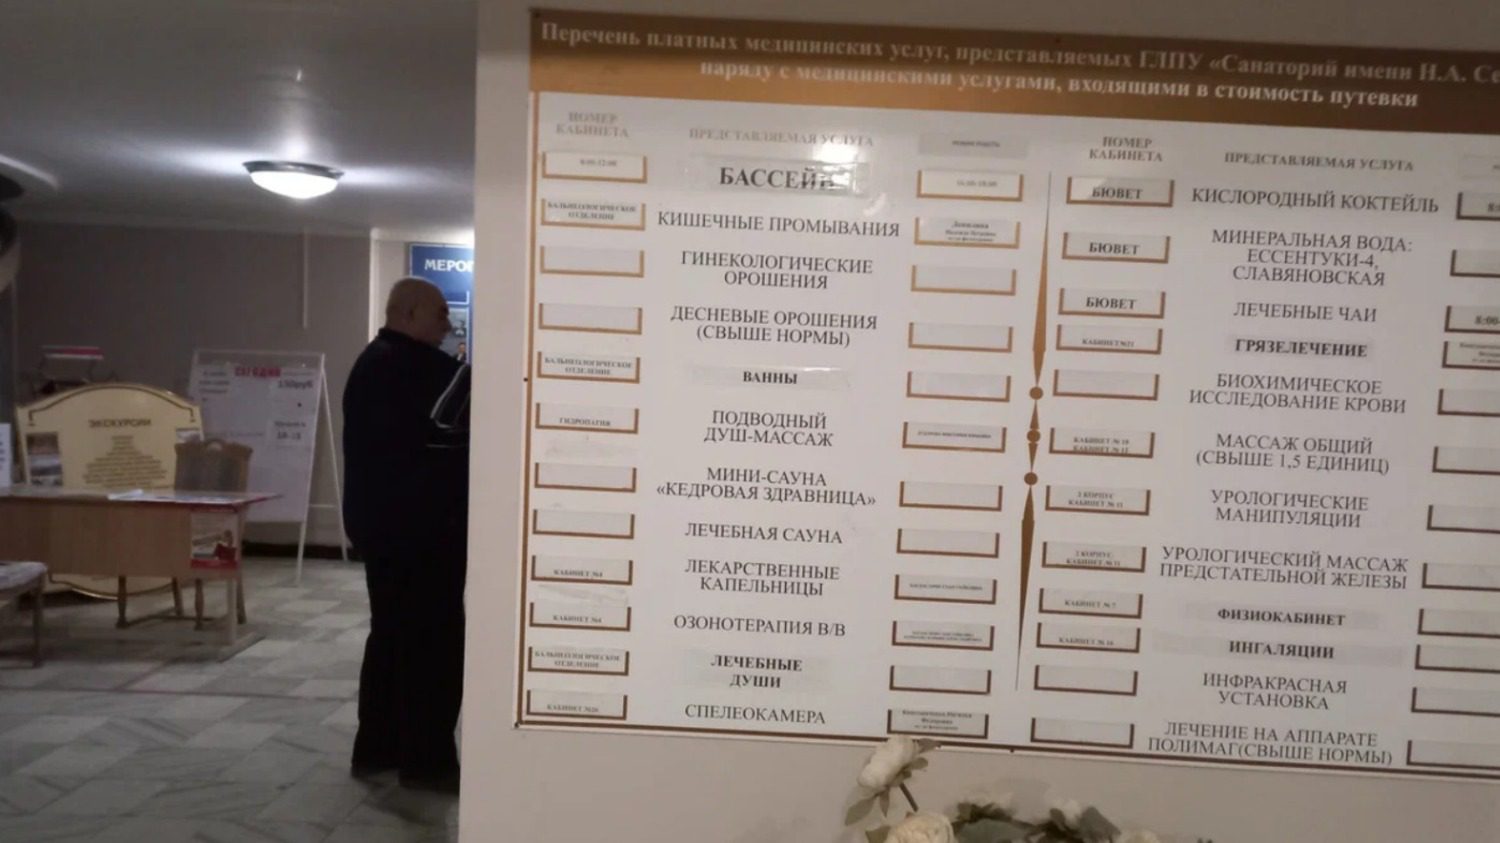 Управление делами президента Украины осталось без санатория на Ставрополье1